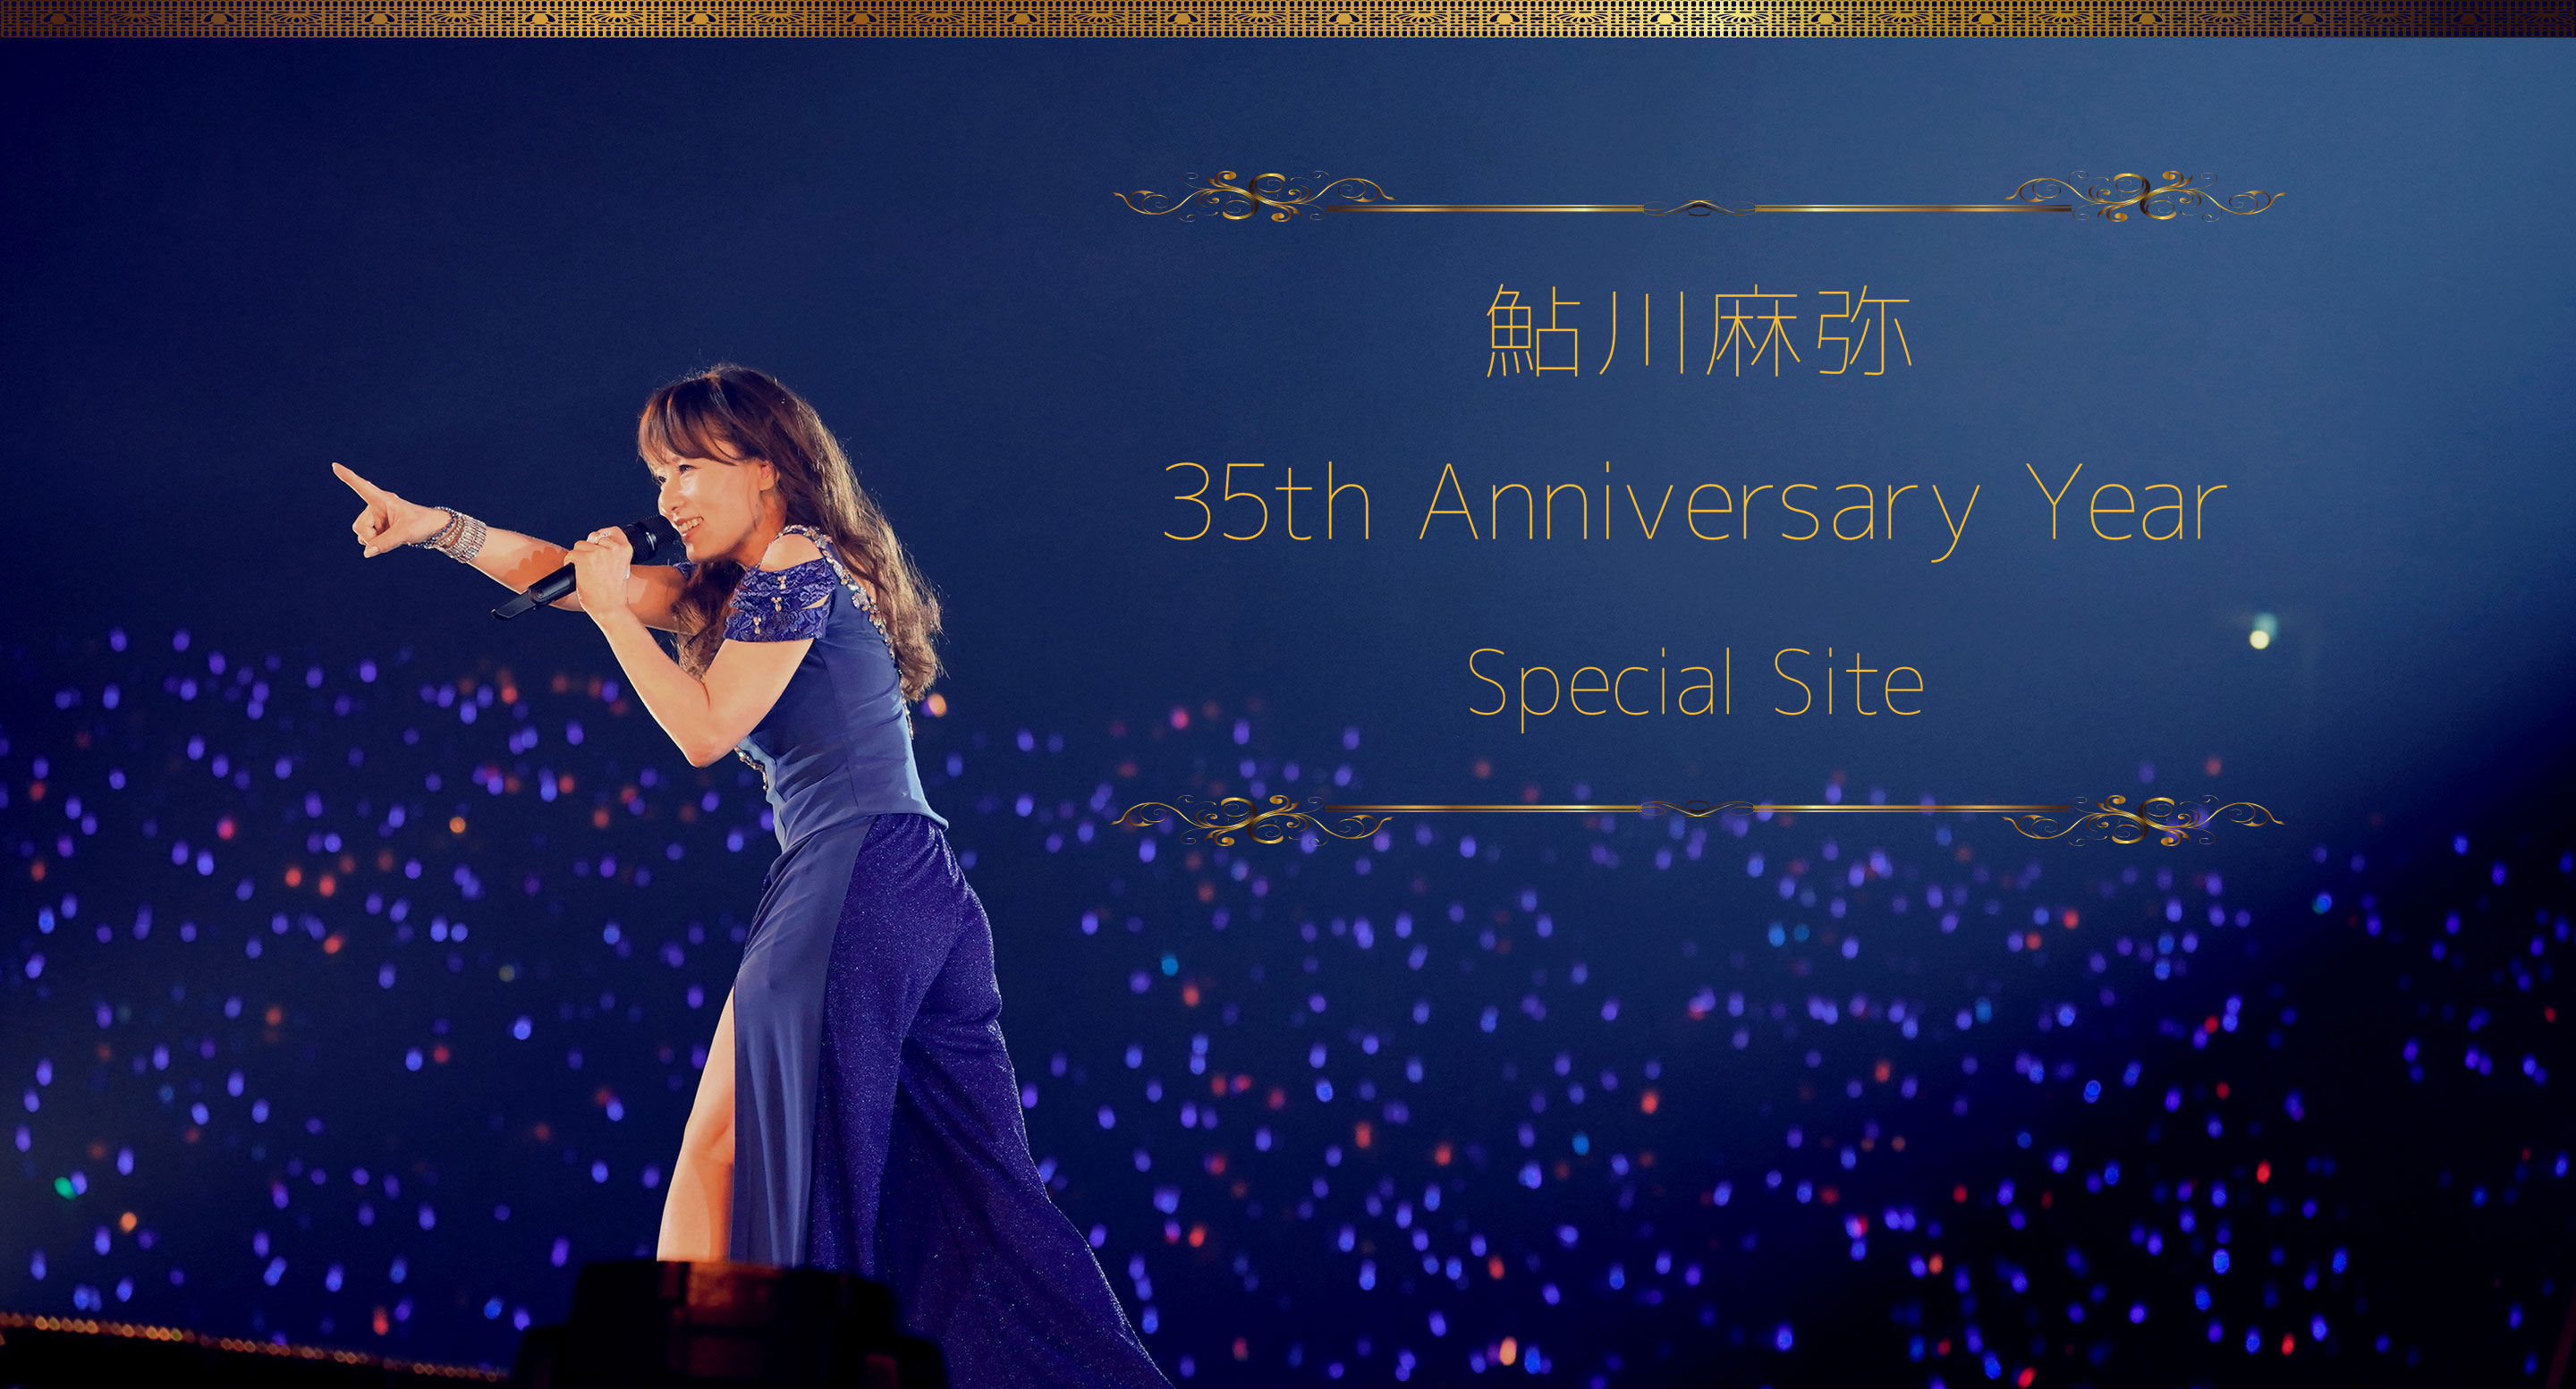 鮎川麻弥 35th Anniversary Year Special Site